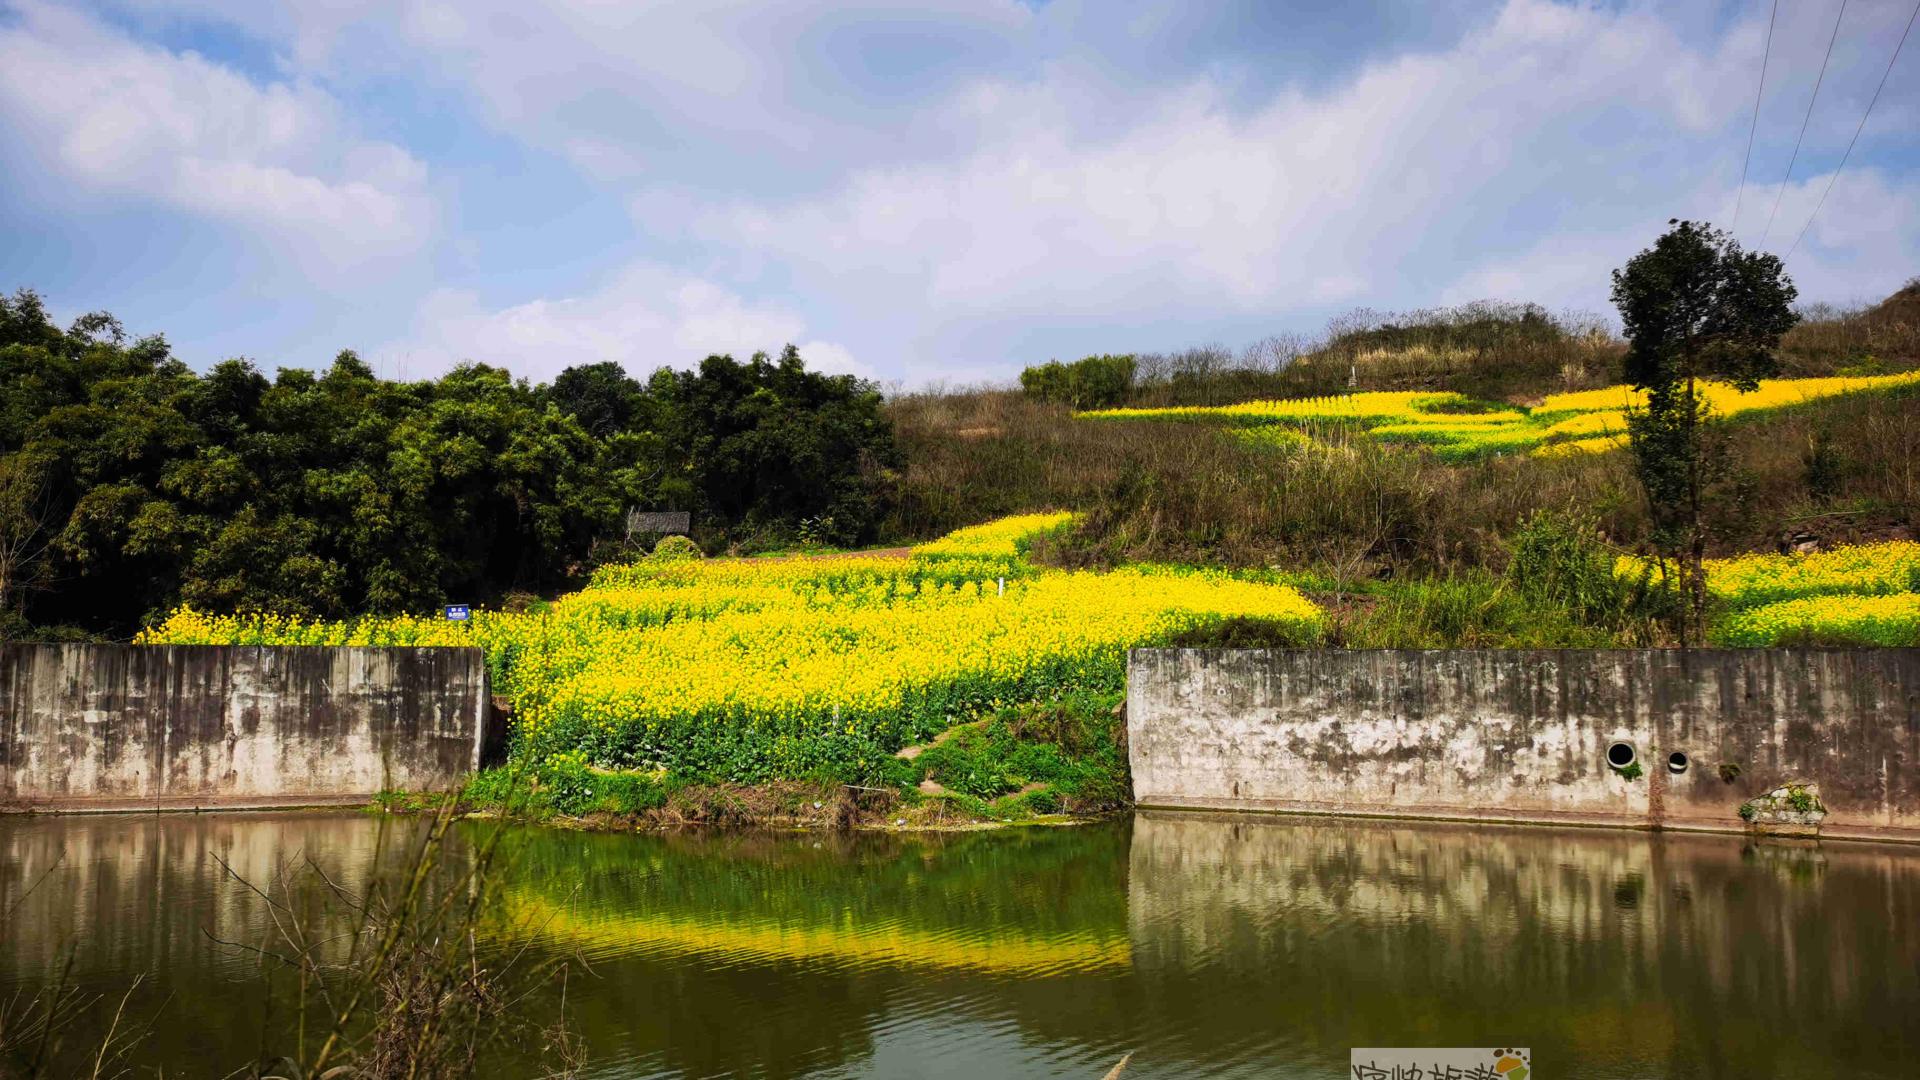 |内自边界行——走进乌龙河高滩桥的春天里